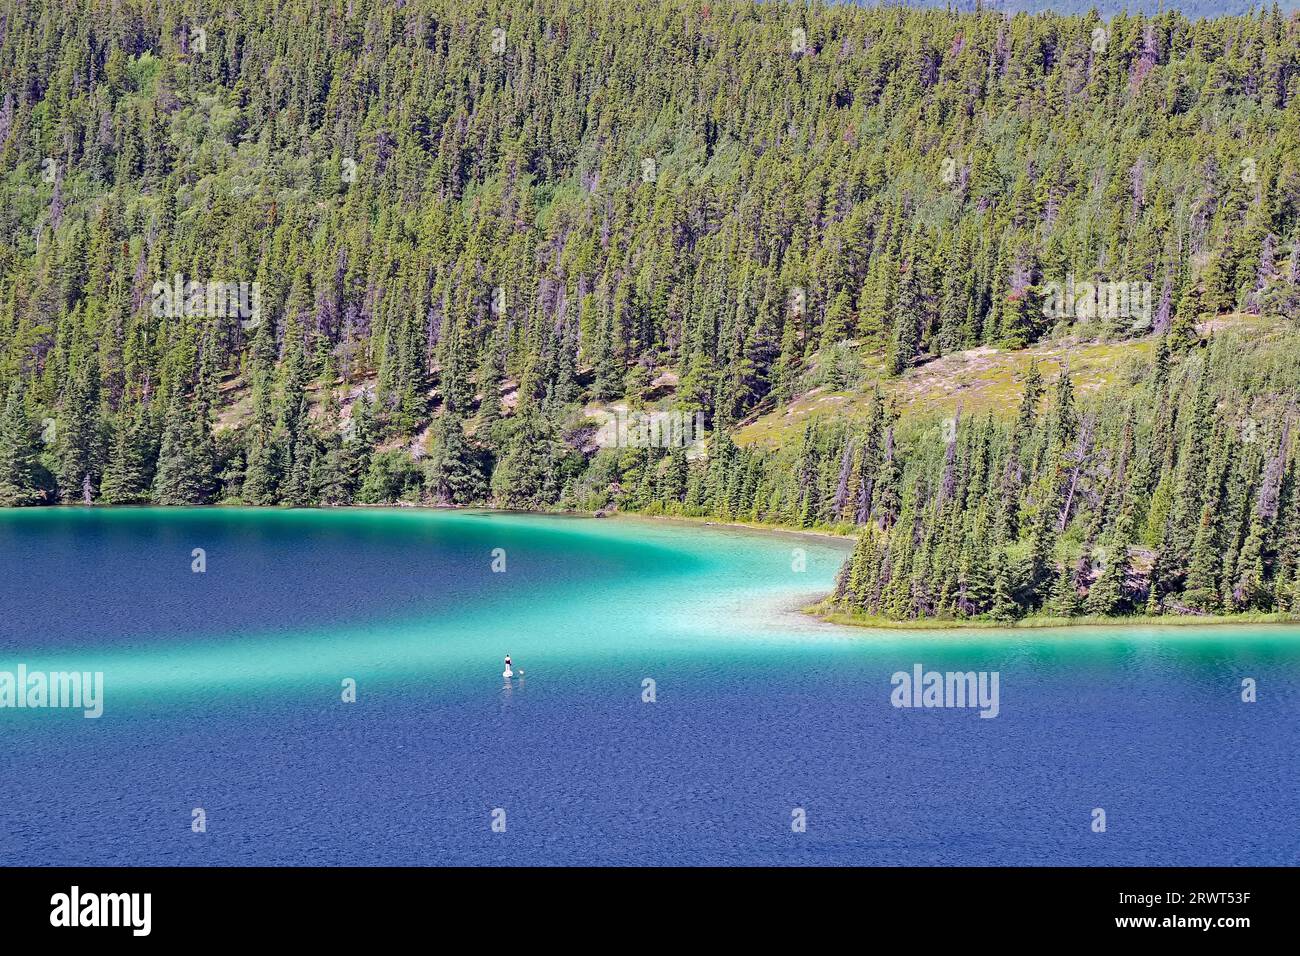 Lago trasparente e trasparente con acqua di colore verde, paddler solitario, foresta e montagne, lago Emerald, autostrada Klondike, Carcross, territorio dello Yukon, Canad Foto Stock